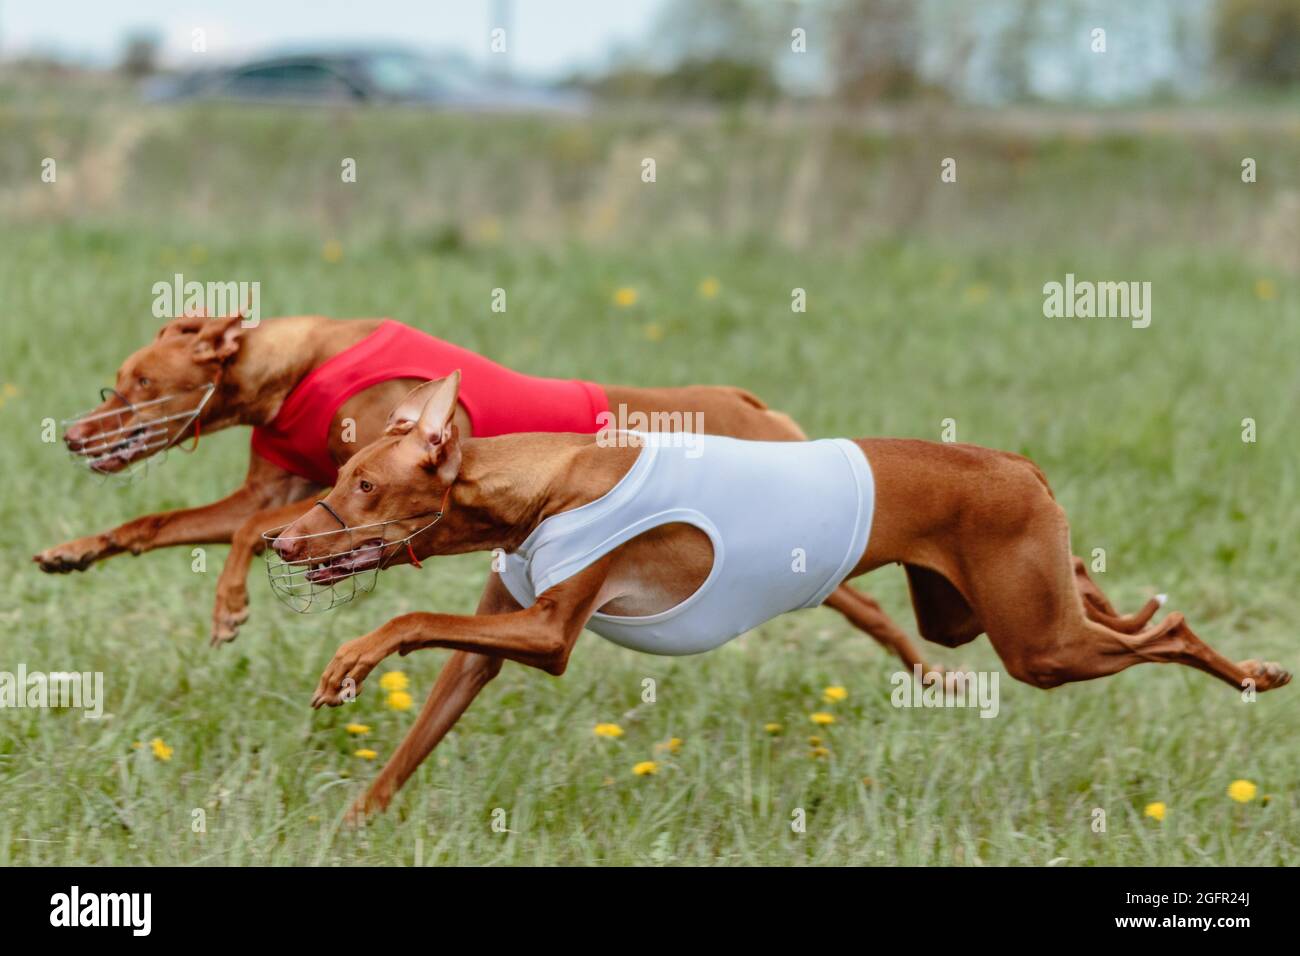 Due circo dell'etna che corrono a piena velocità a lure coursing sport Foto Stock